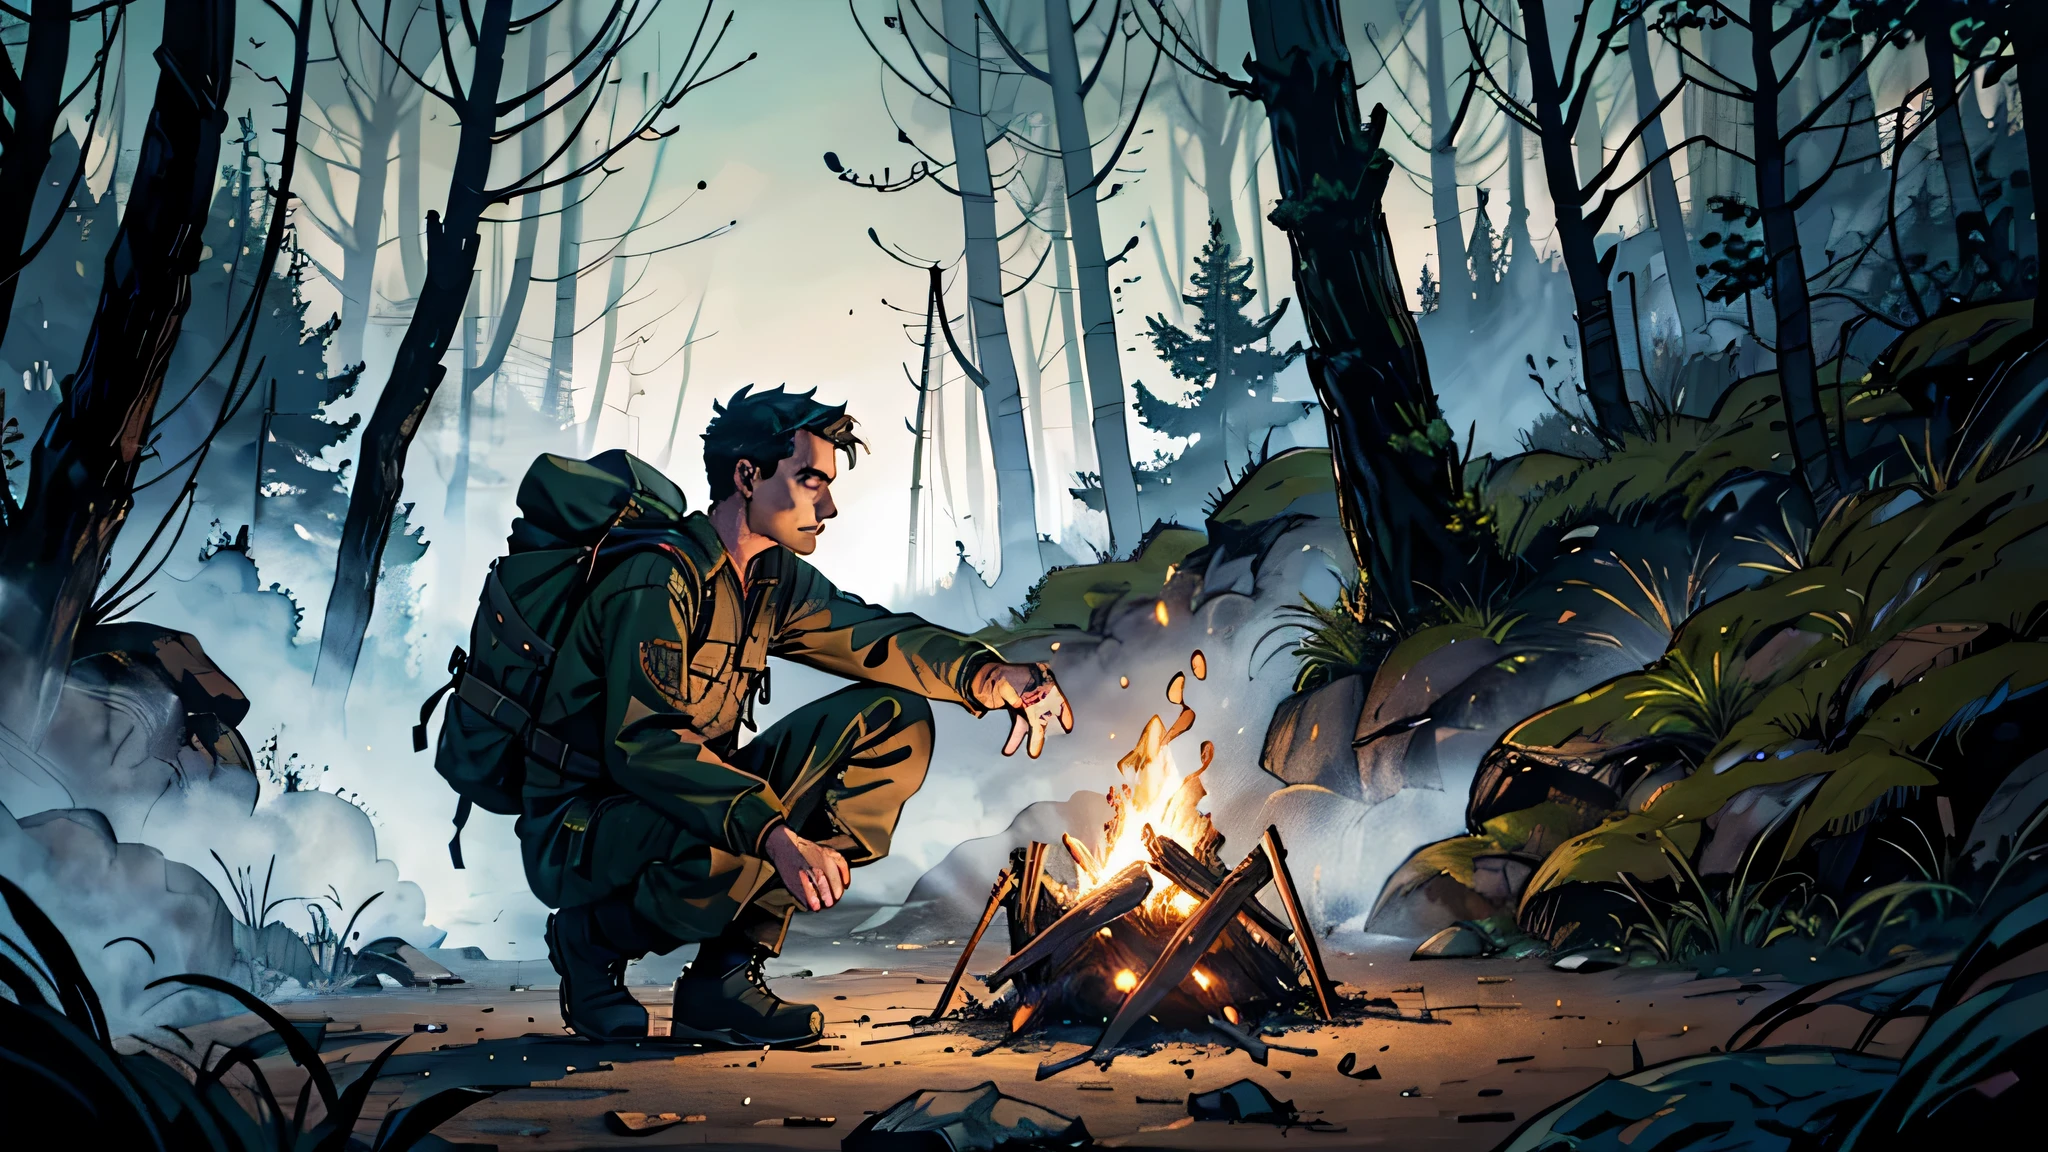 Ein Mann in Campingkleidung, schwarze Stiefel und Hose, dunkelgrünes langes Hemd und blauer Rucksack in einem Wald mit dichten Bäumen und einem Lagerfeuerlicht, das in einem rötlichen Ton in einer nächtlichen und unheimlichen Umgebung brennt.